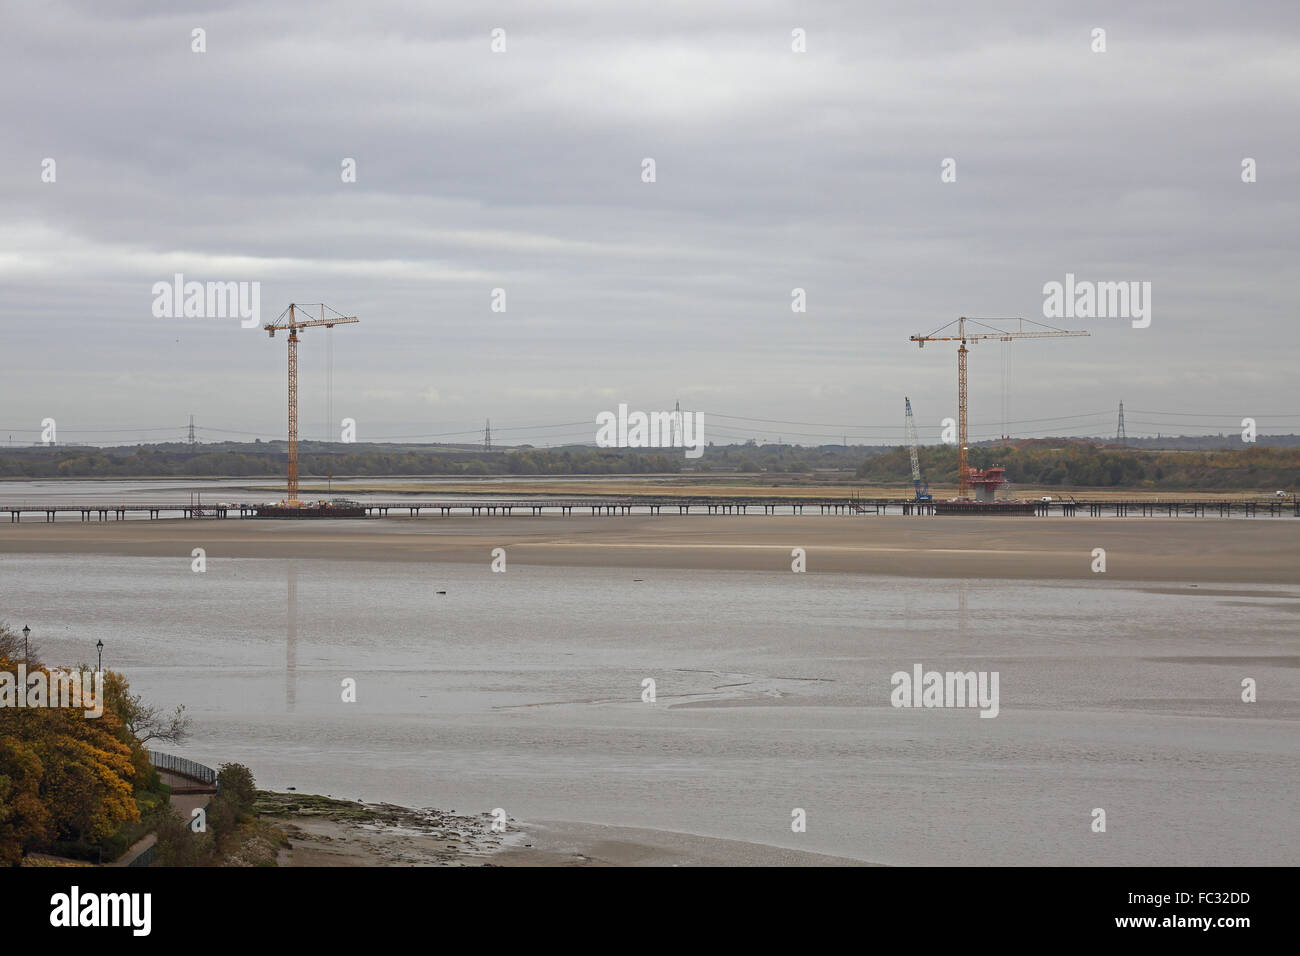 Ampia vista del nuovo gateway Mersey ponte sul fiume Mersey vista da ovest Foto Stock